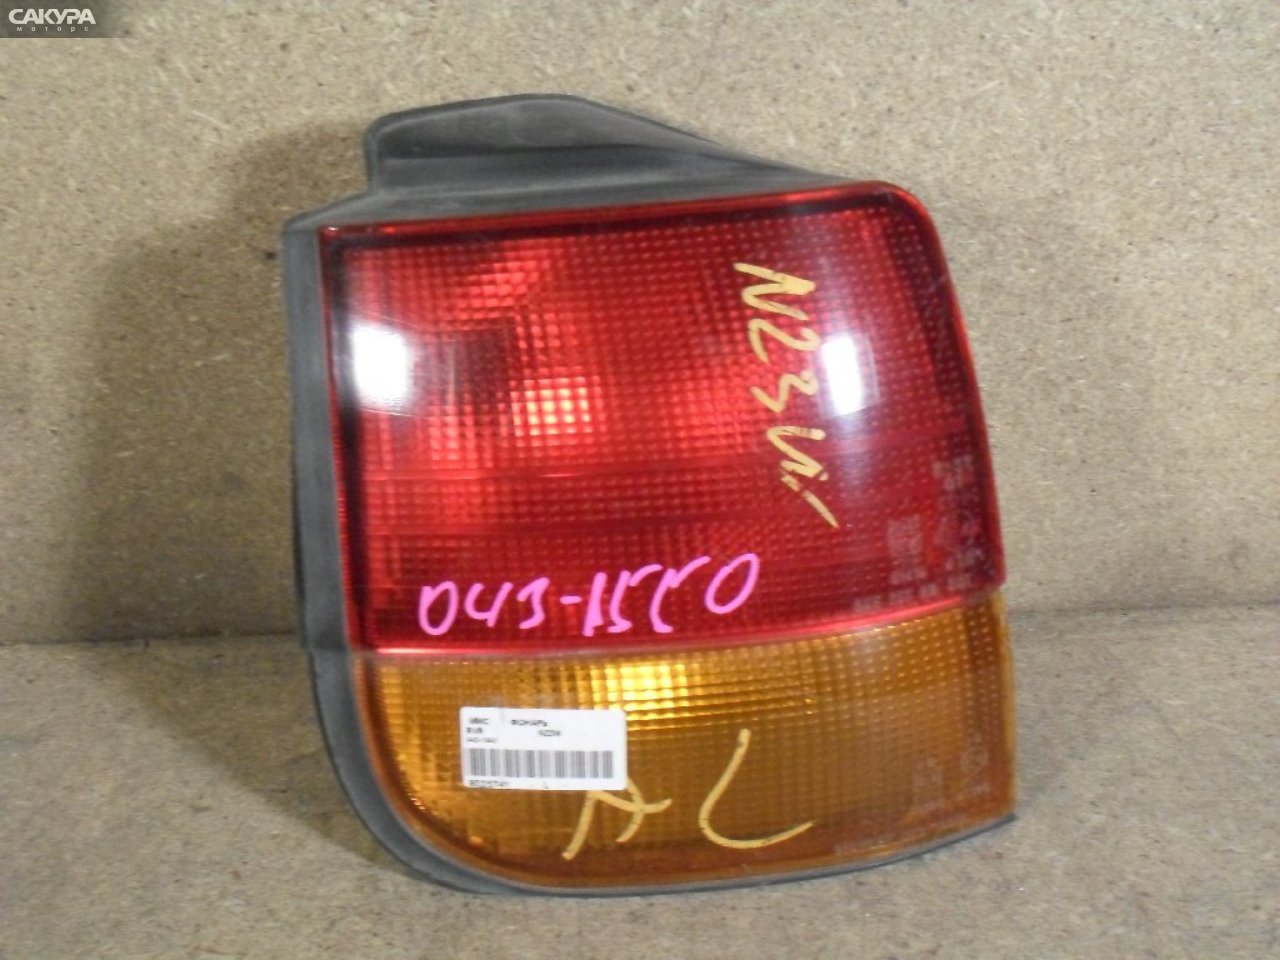 Фонарь стоп-сигнала левый Mitsubishi RVR N23W 043-1550: купить в Сакура Абакан.